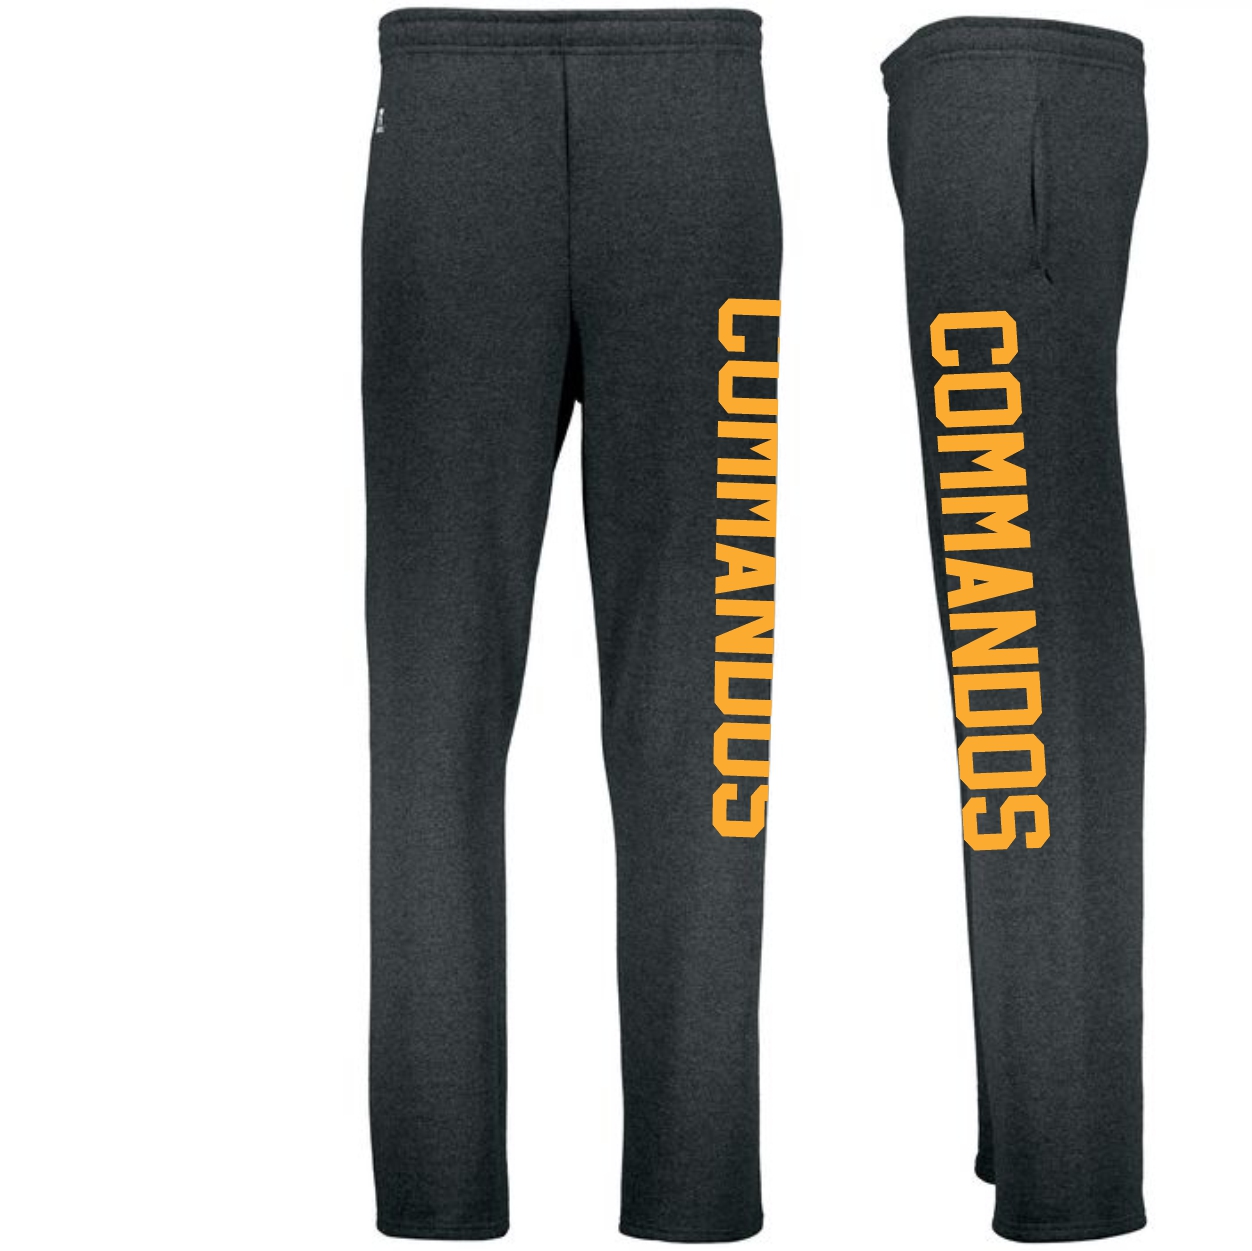 Commandos Sweatpants - It's Time Promotions